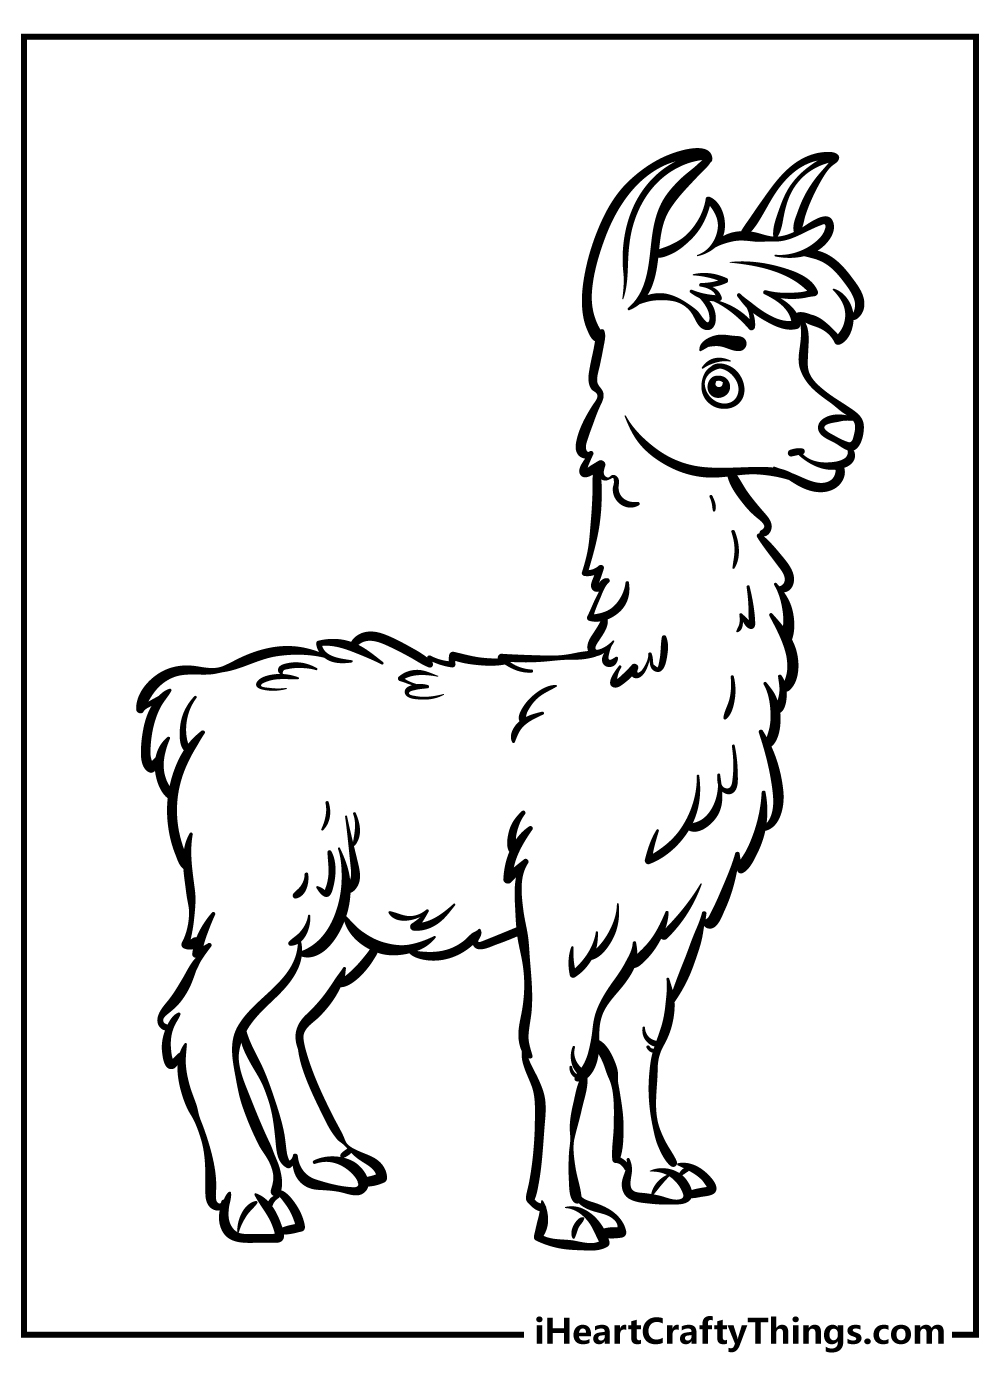 llama Coloring Book for kids free printable